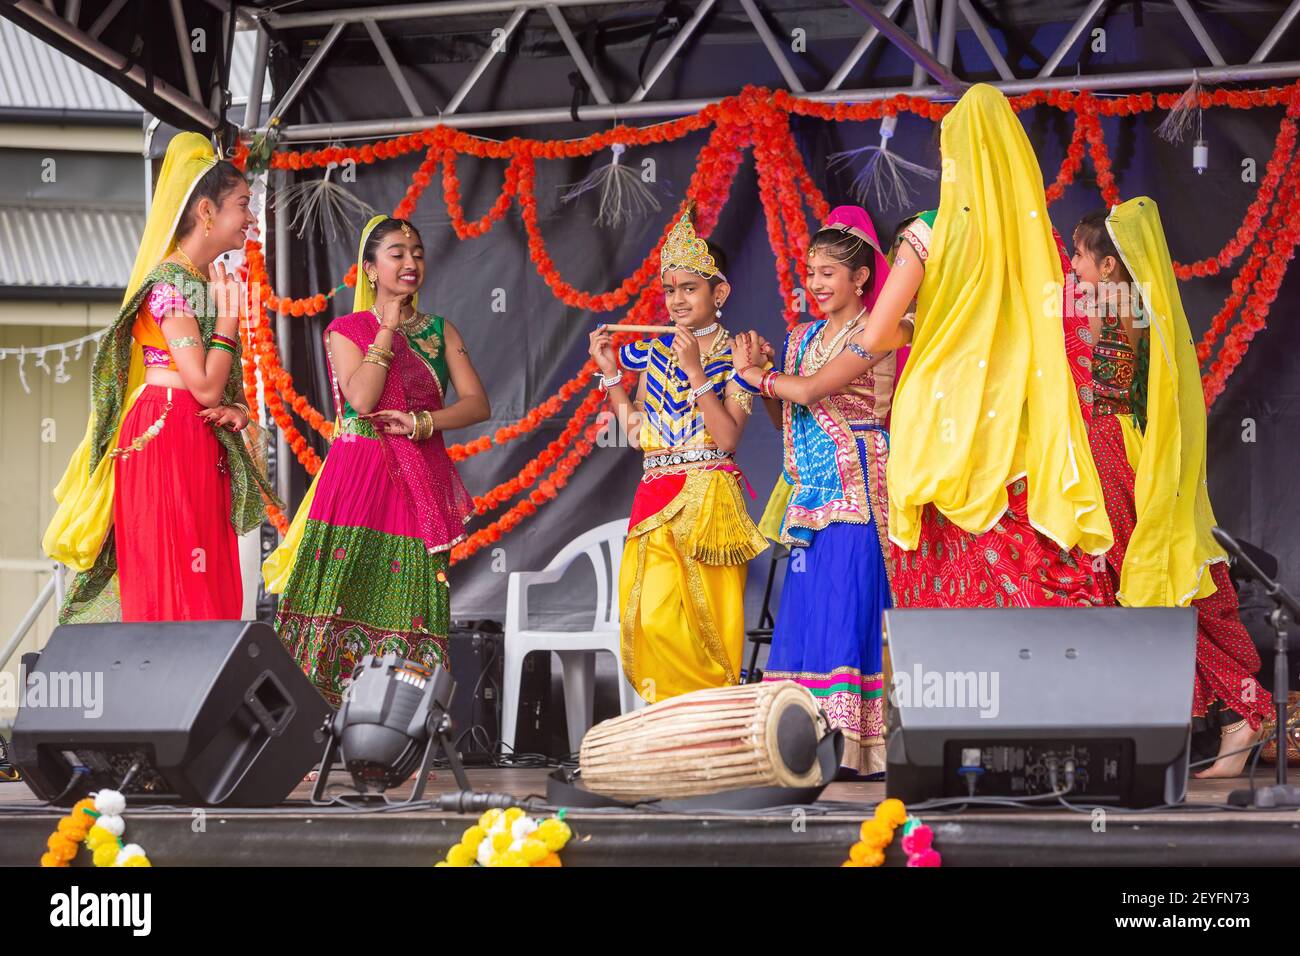 Junge indische Mädchen in bunten traditionellen Kleidung auf der Bühne während der Feierlichkeiten von Diwali, dem hinduistischen Festival des Lichts Stockfoto